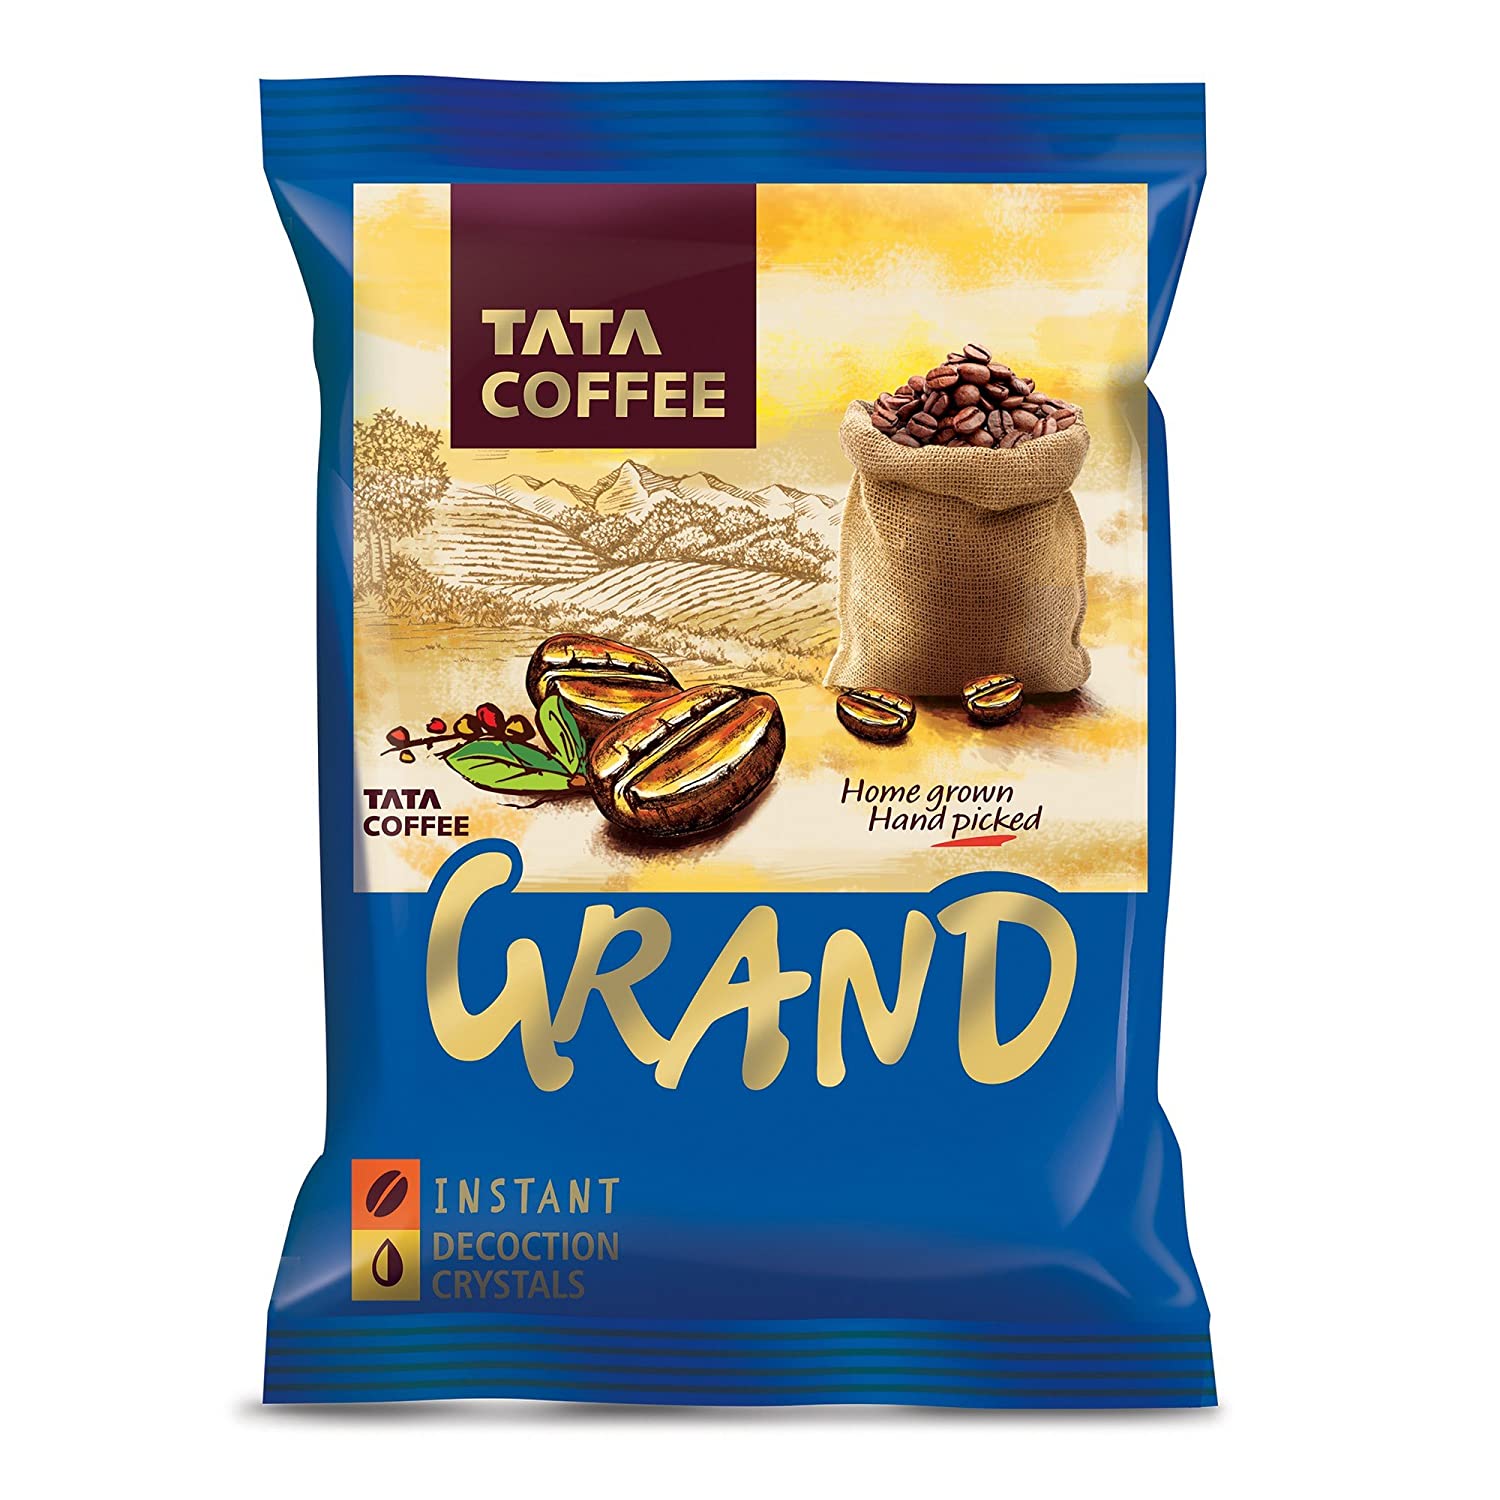 Tata Coffee Grand